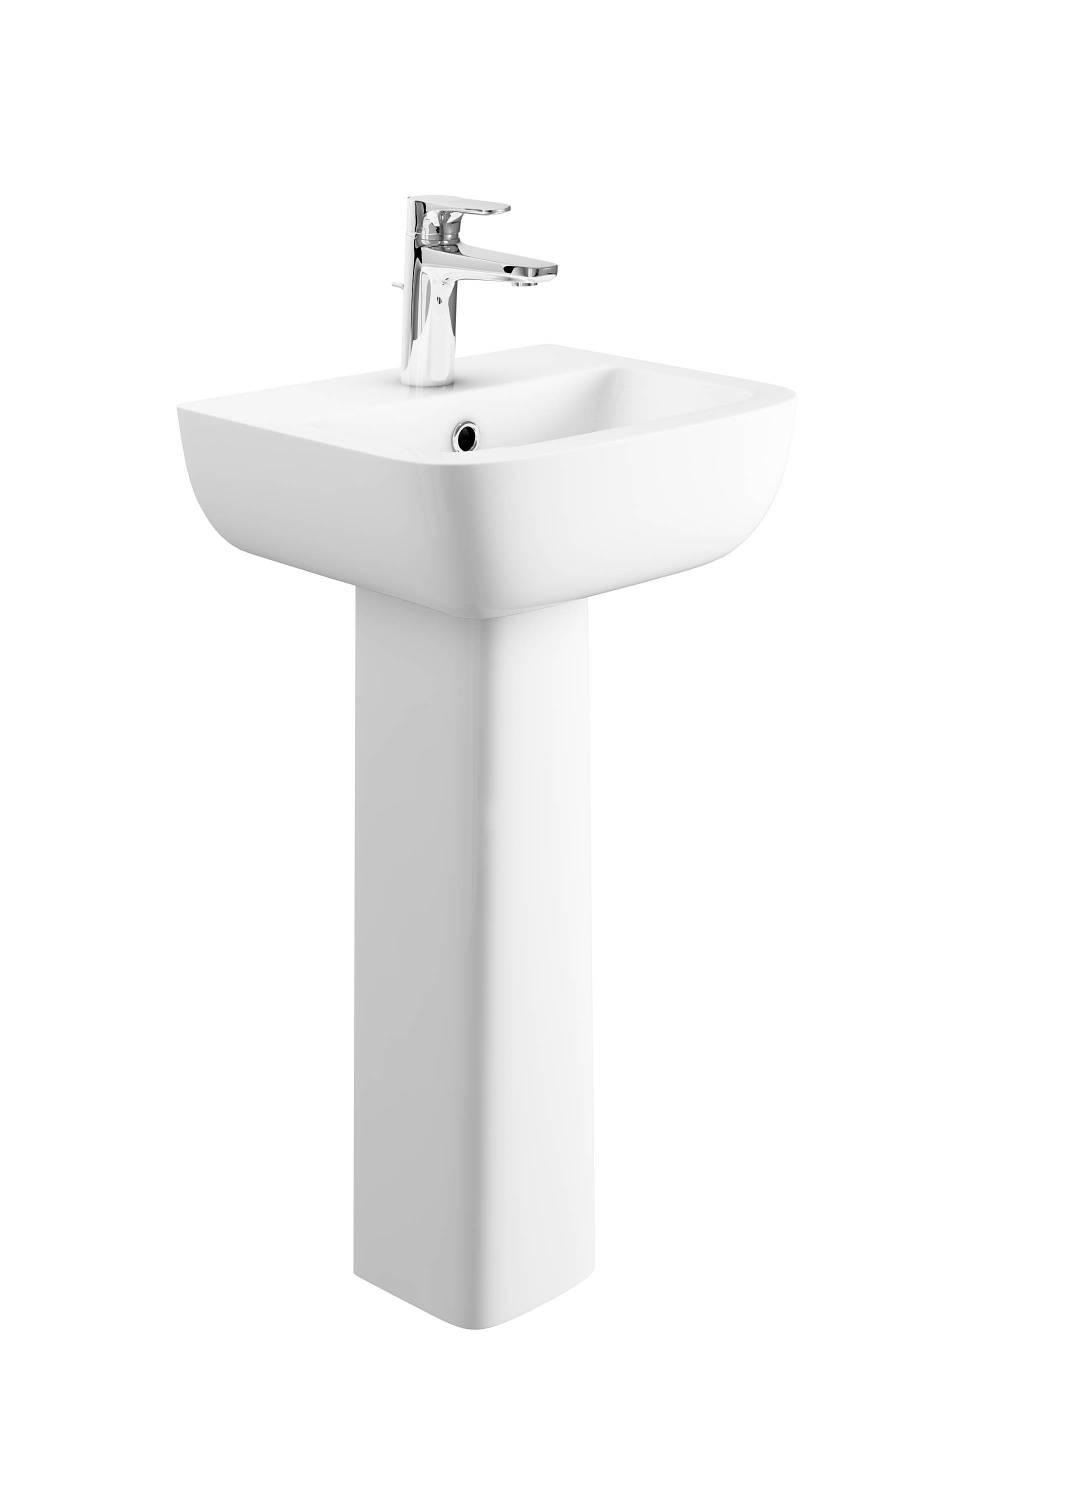 Designer Series 3 43 cm 1TH basin and pedestal set